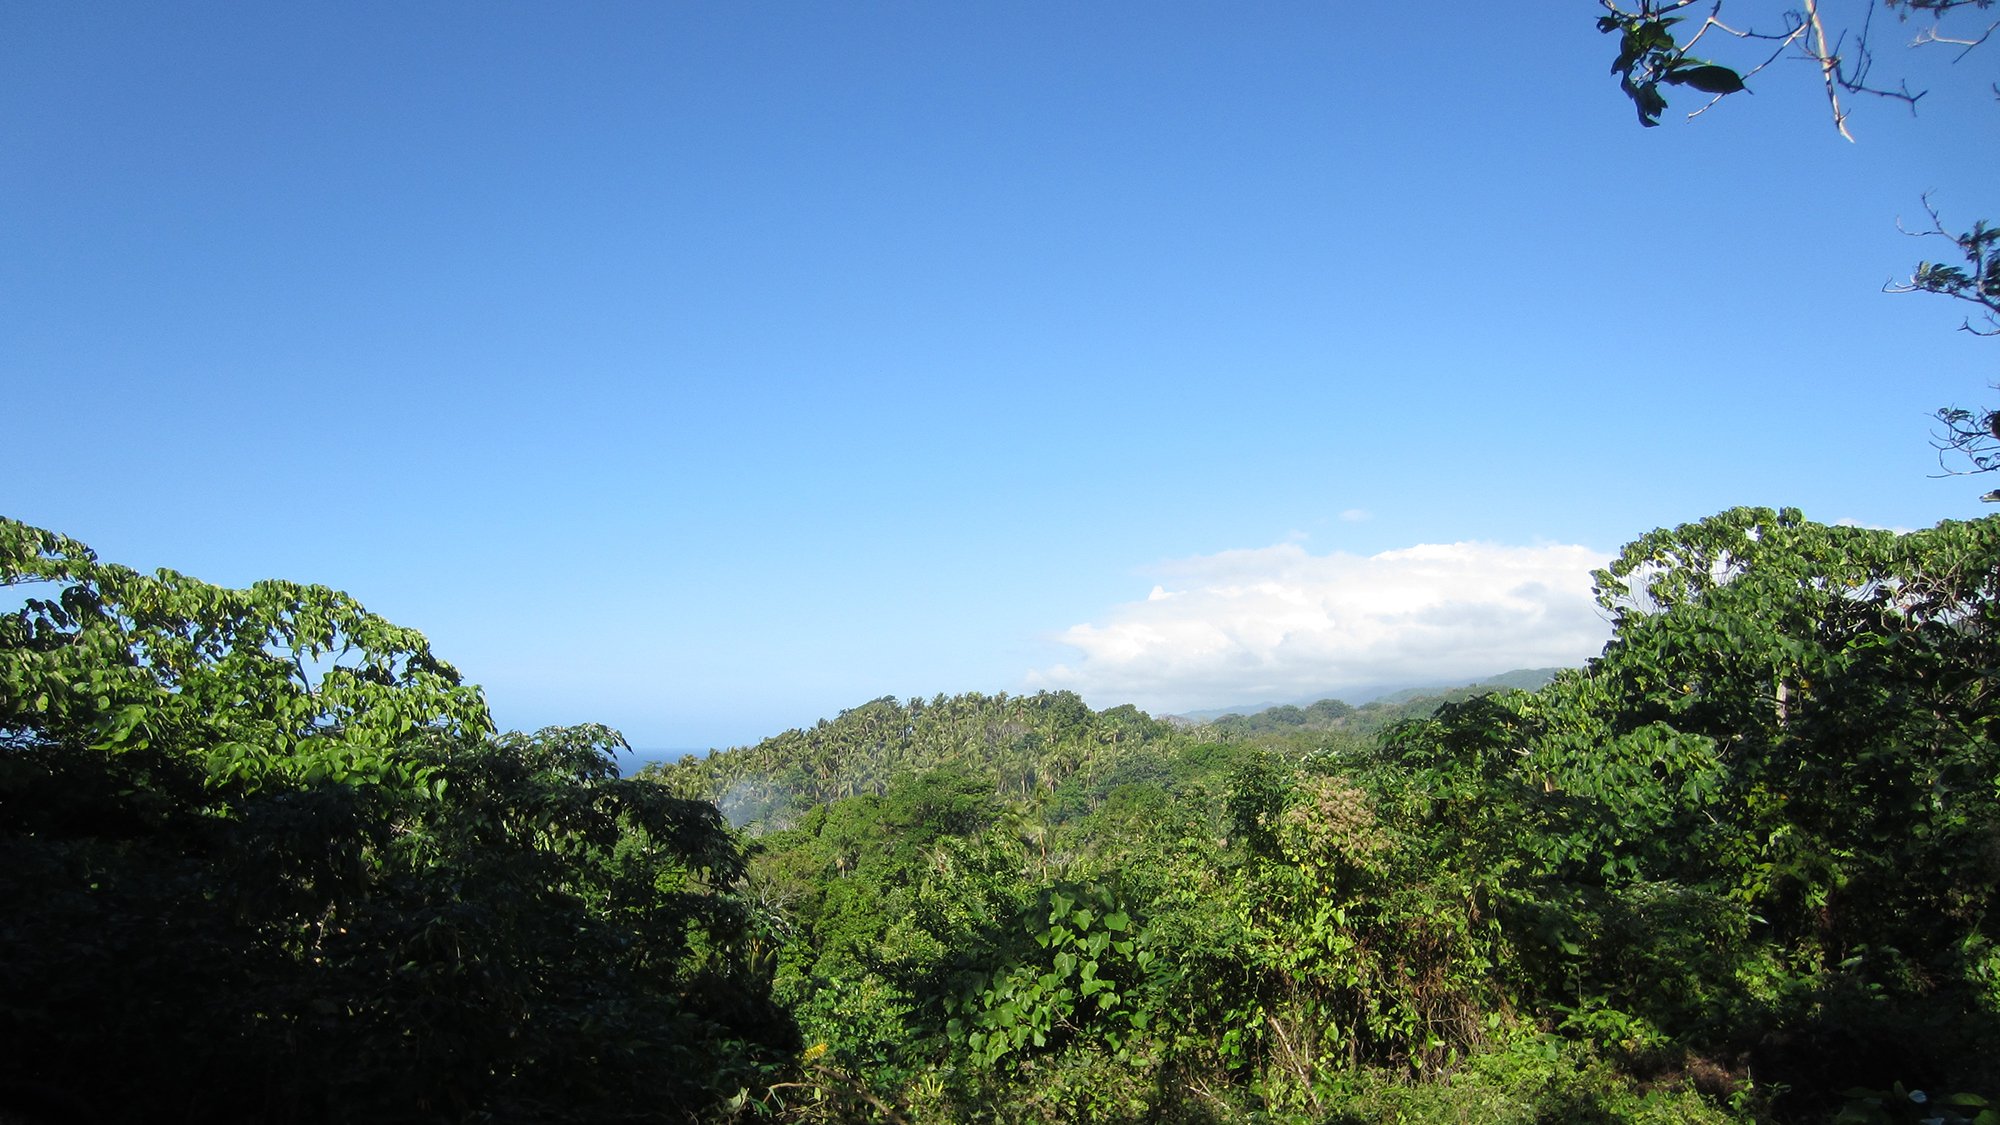 View over trees in Vanuatu